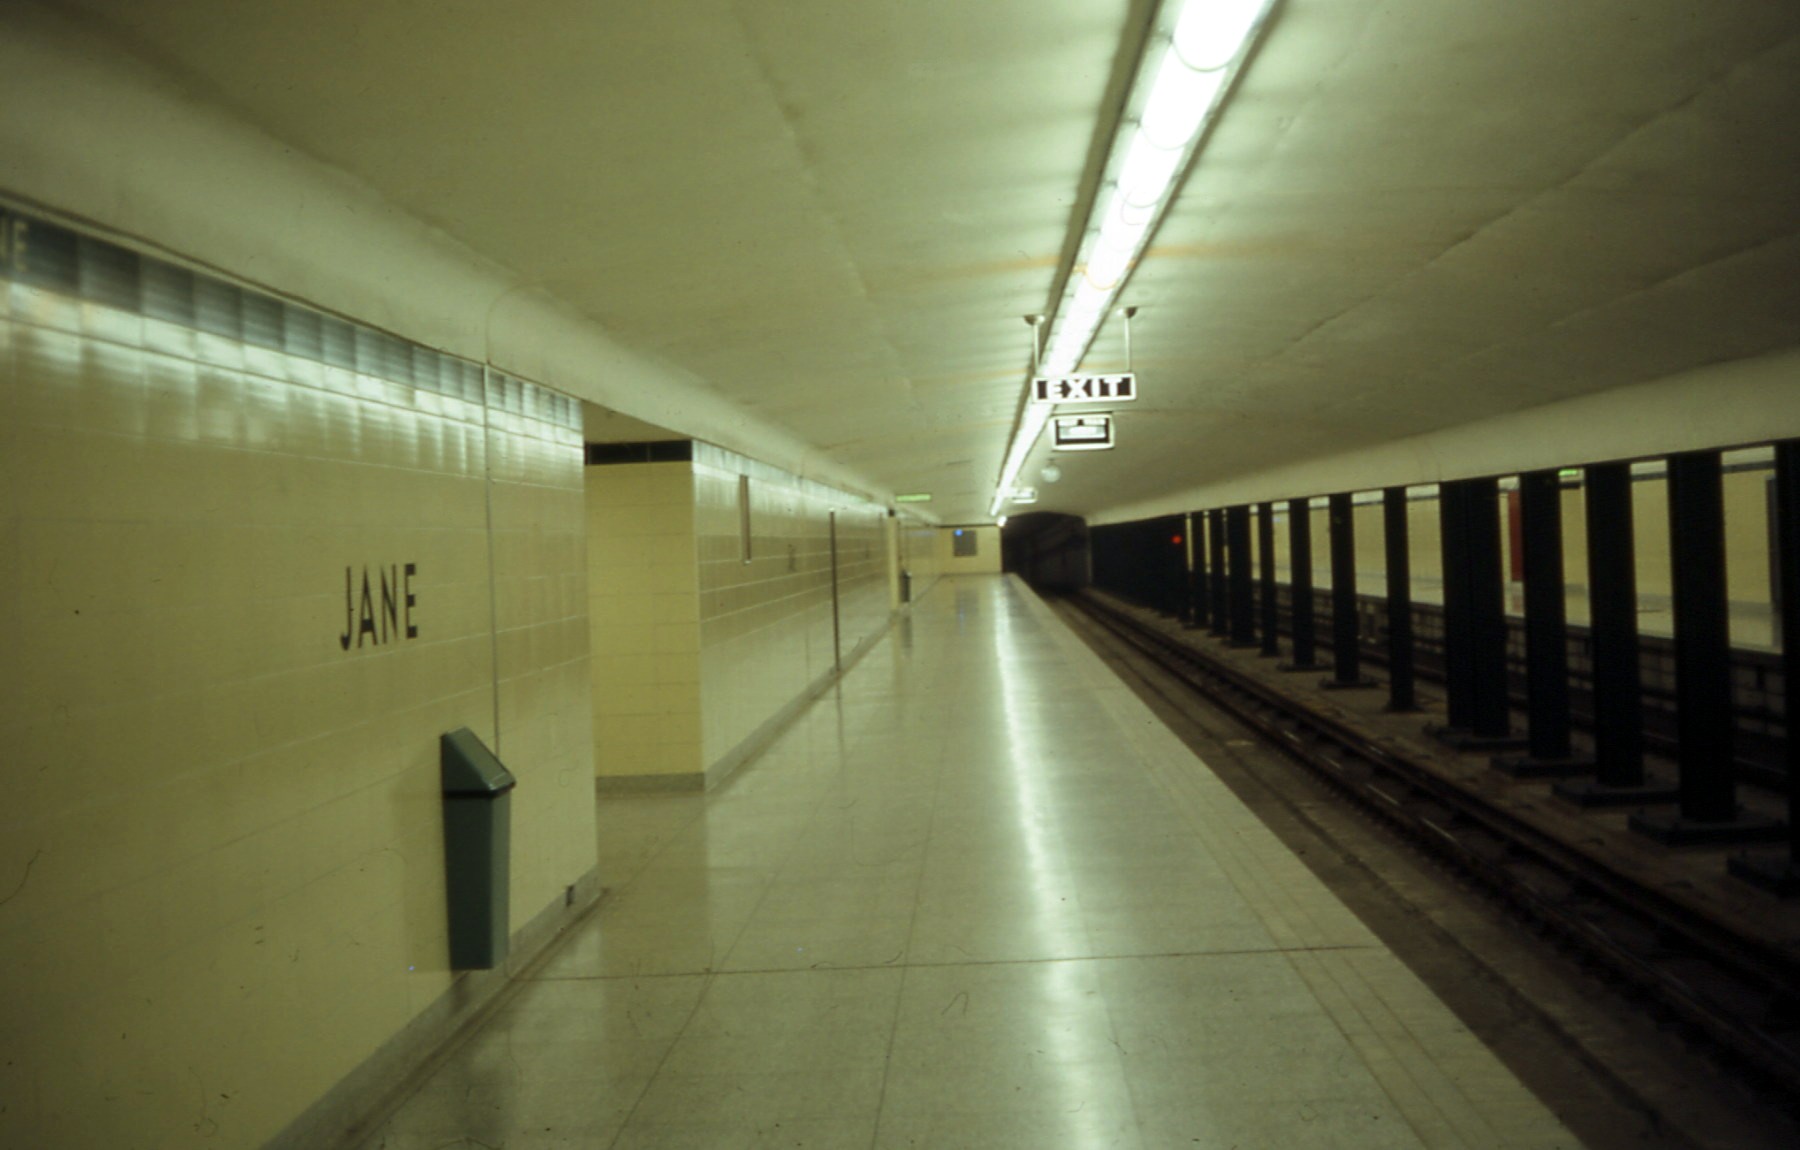 1968 Platform #1